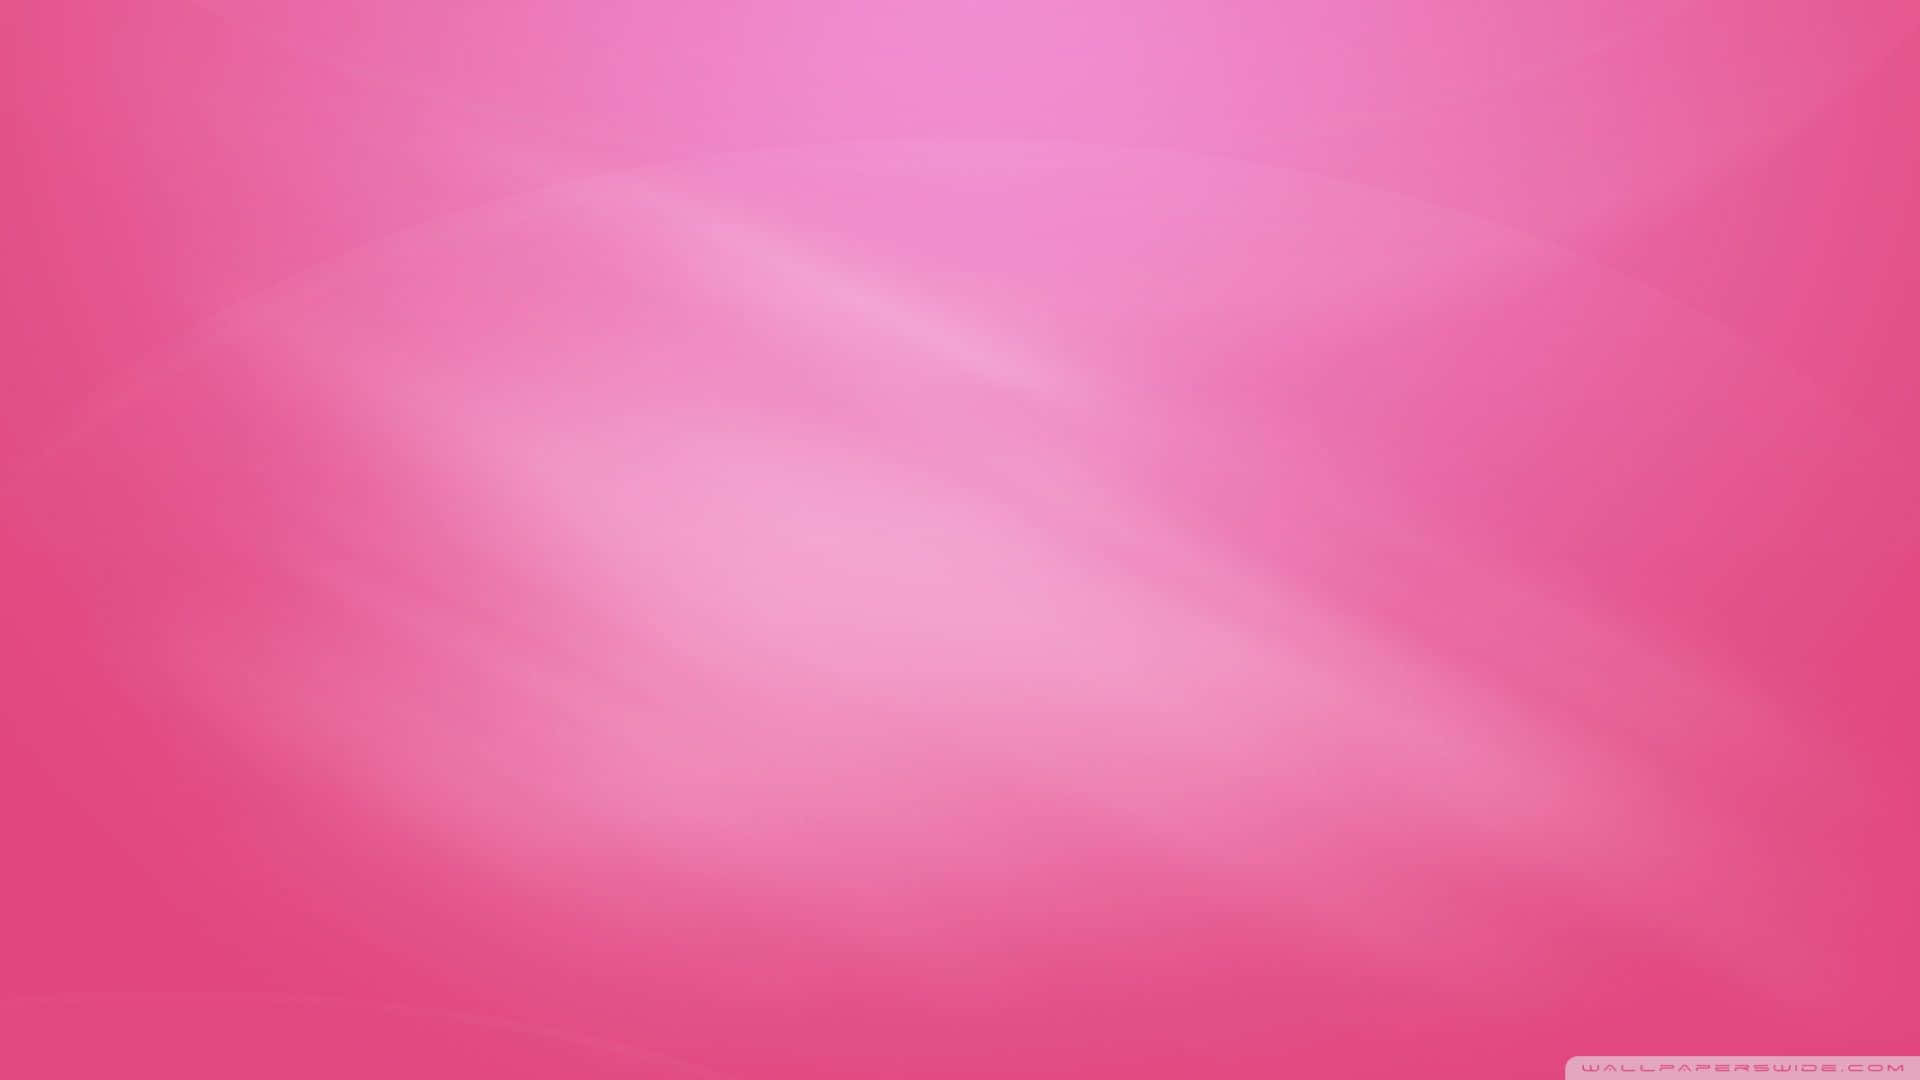 Lys og Sjov Solid Pink baggrund, perfekt til enhver anledning. Wallpaper